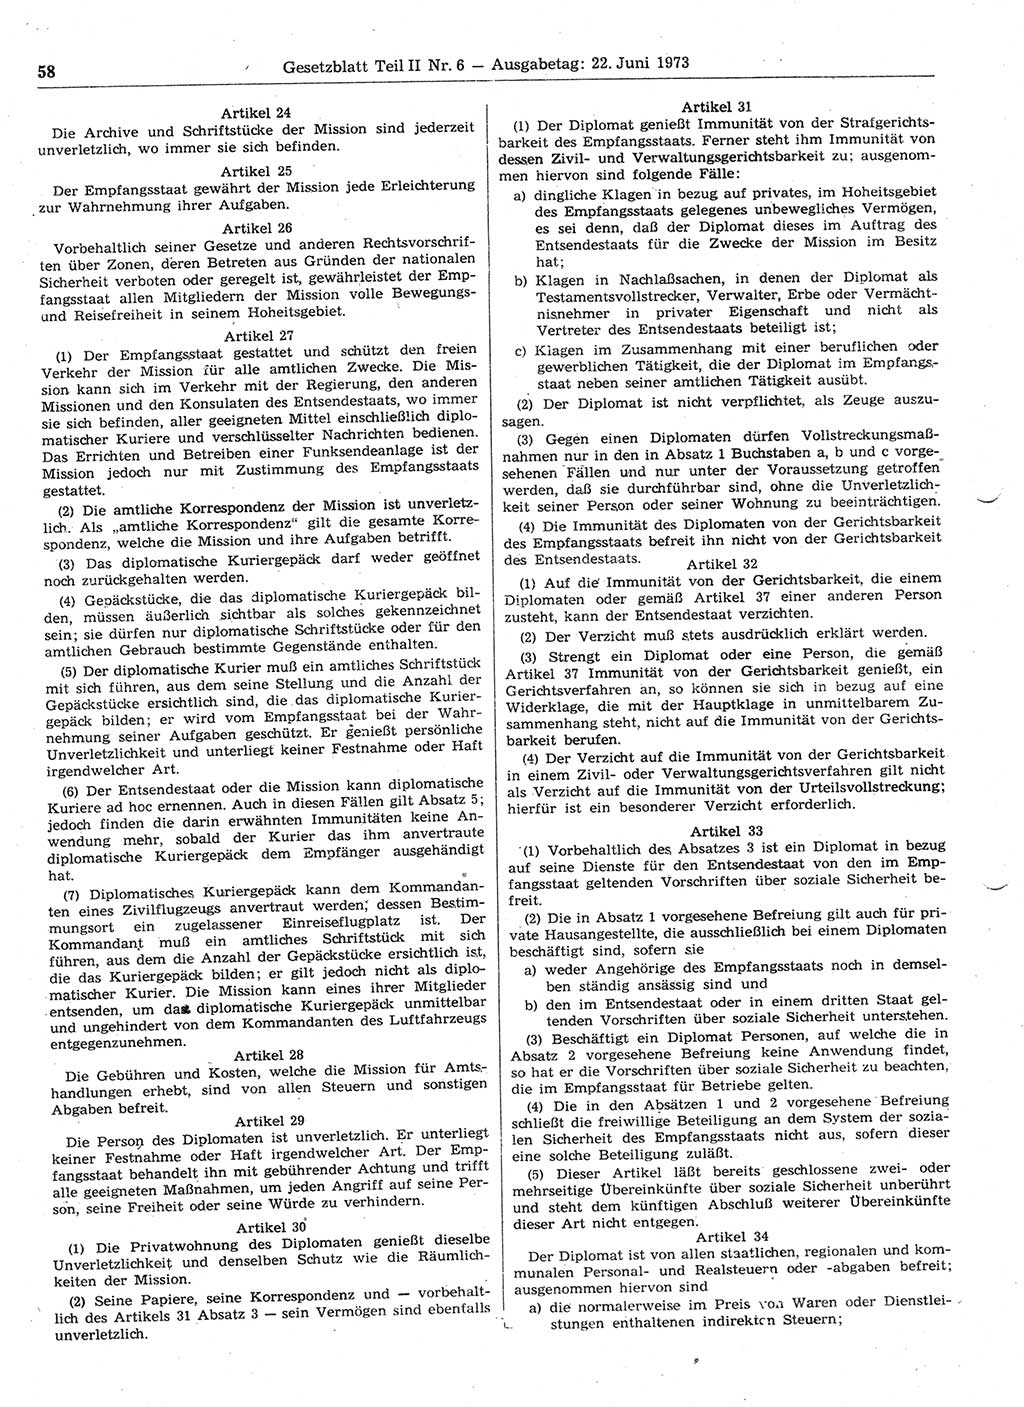 Gesetzblatt (GBl.) der Deutschen Demokratischen Republik (DDR) Teil ⅠⅠ 1973, Seite 58 (GBl. DDR ⅠⅠ 1973, S. 58)